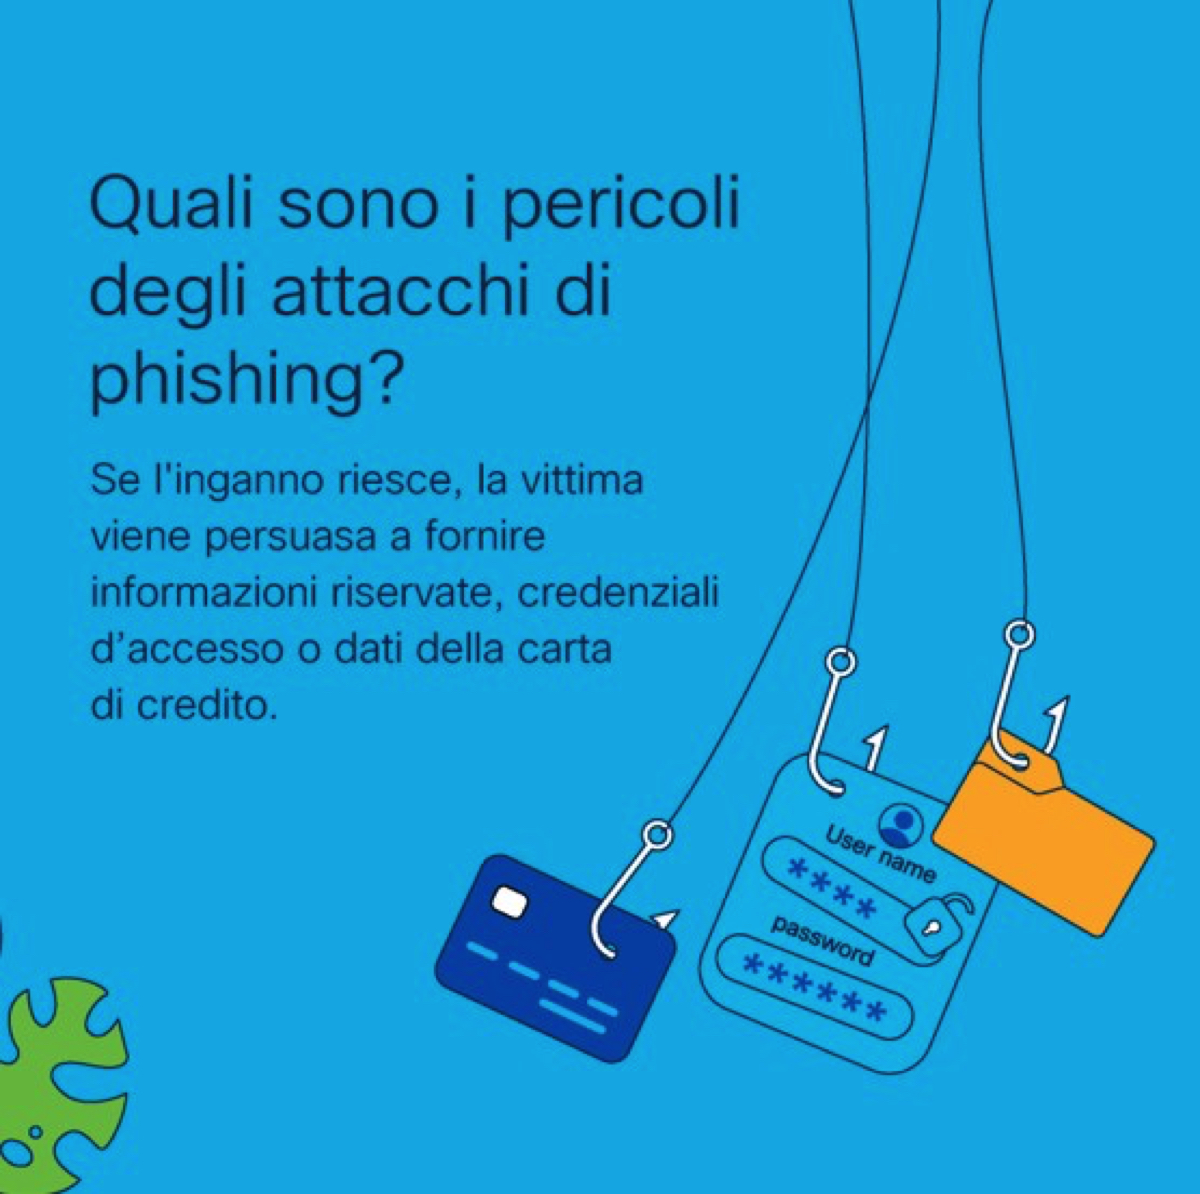 Guida Cisco contro il phishing, 5 consigli